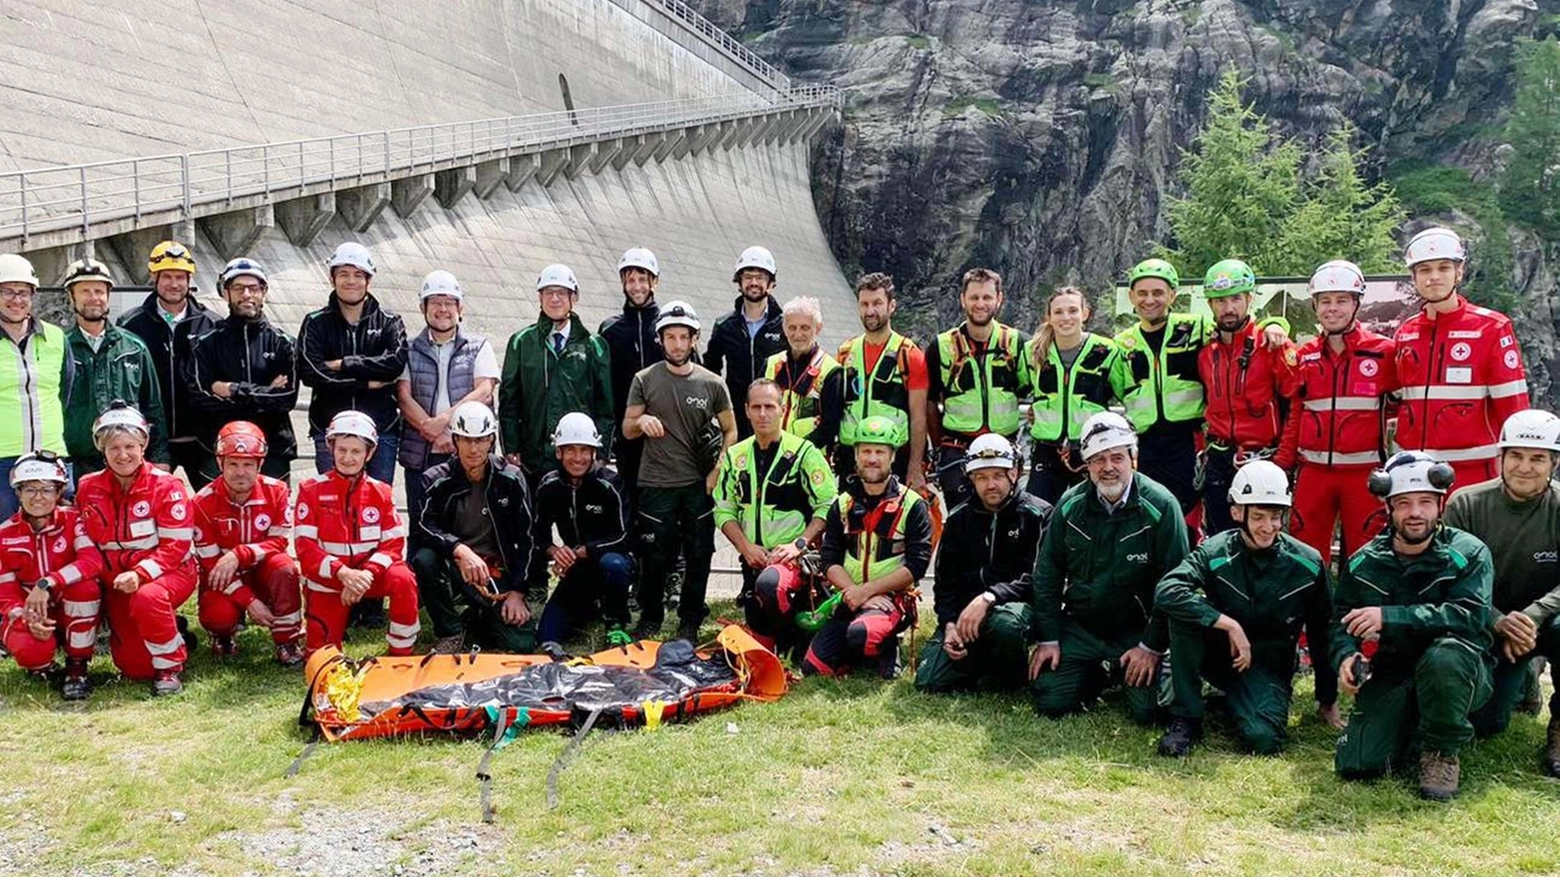 Esercitazione di soccorso alpino e Croce Rossa alla diga dell’Alpe Gera di Enel Green Power, con simulazione di salvataggio e trasporto di persona in difficoltà. Partecipazione del prefetto di Sondrio e apprezzamenti per l'organizzazione dell'evento.